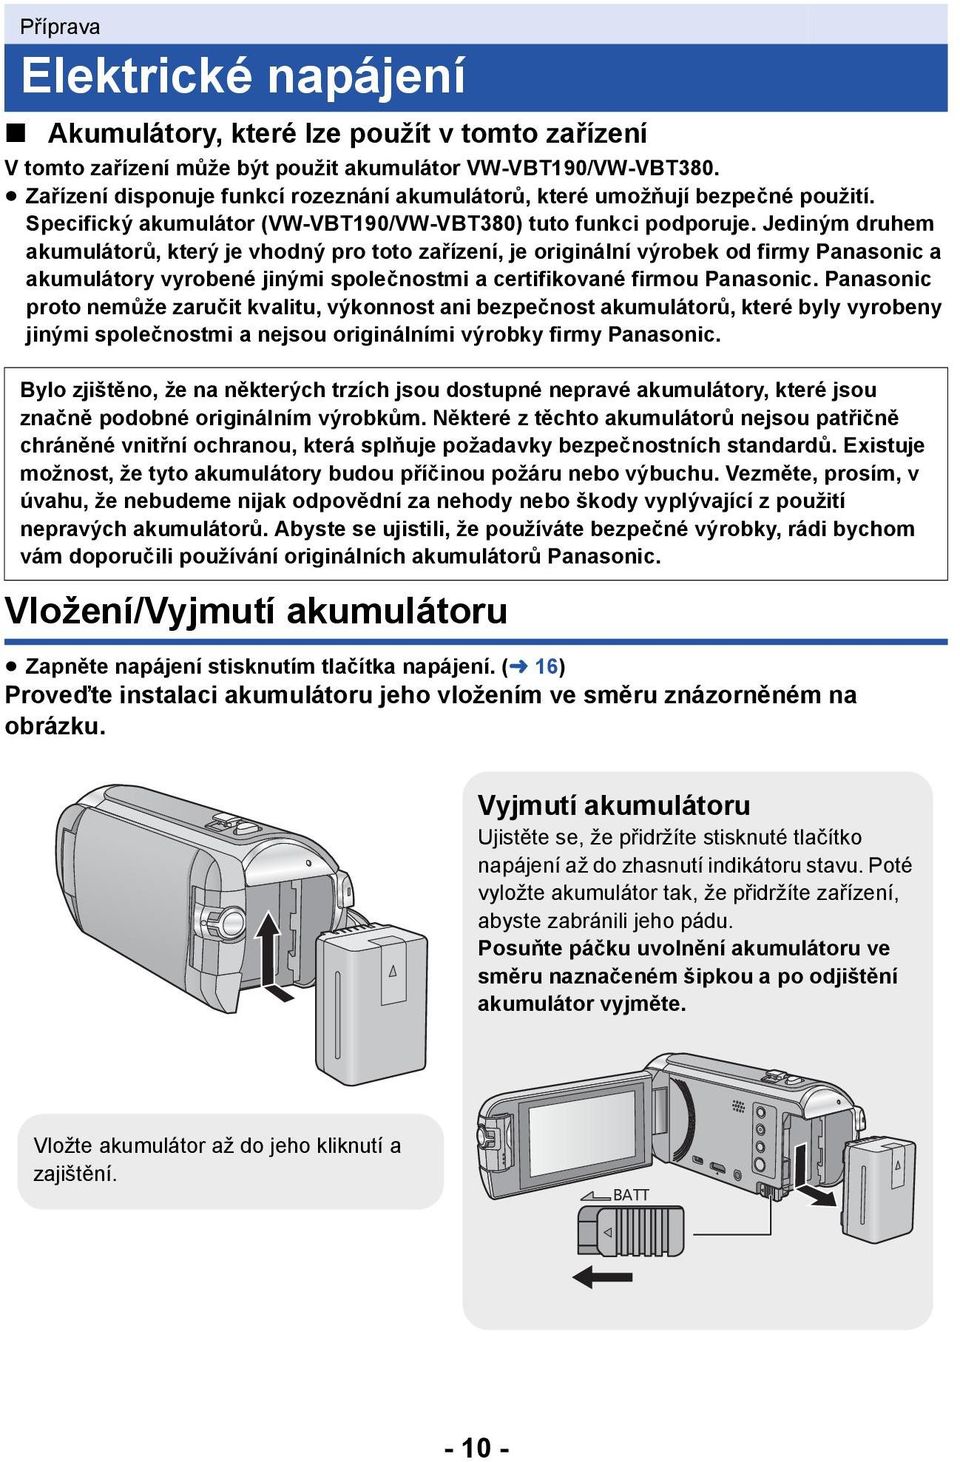 Jediným druhem akumulátorů, který je vhodný pro toto zařízení, je originální výrobek od firmy Panasonic a akumulátory vyrobené jinými společnostmi a certifikované firmou Panasonic.